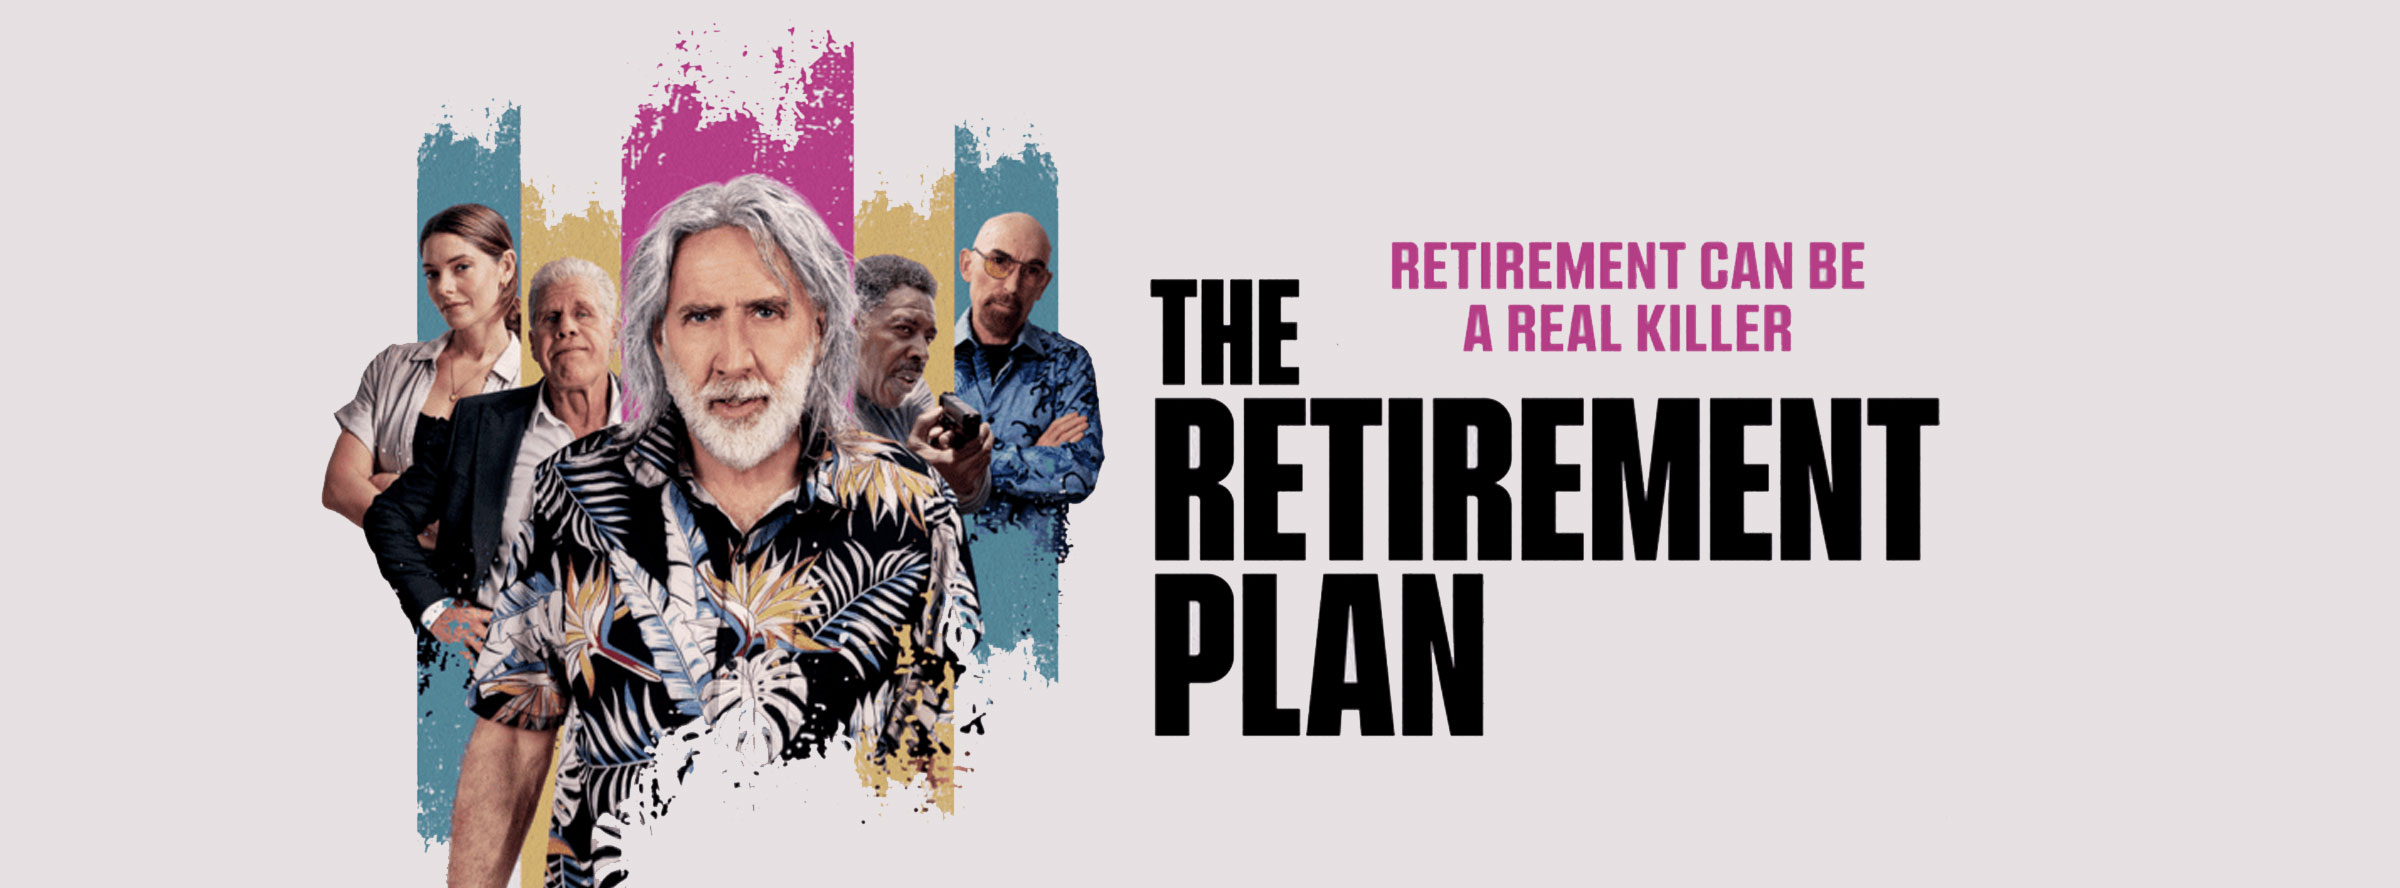 Slider Image for Retirement Plan, The